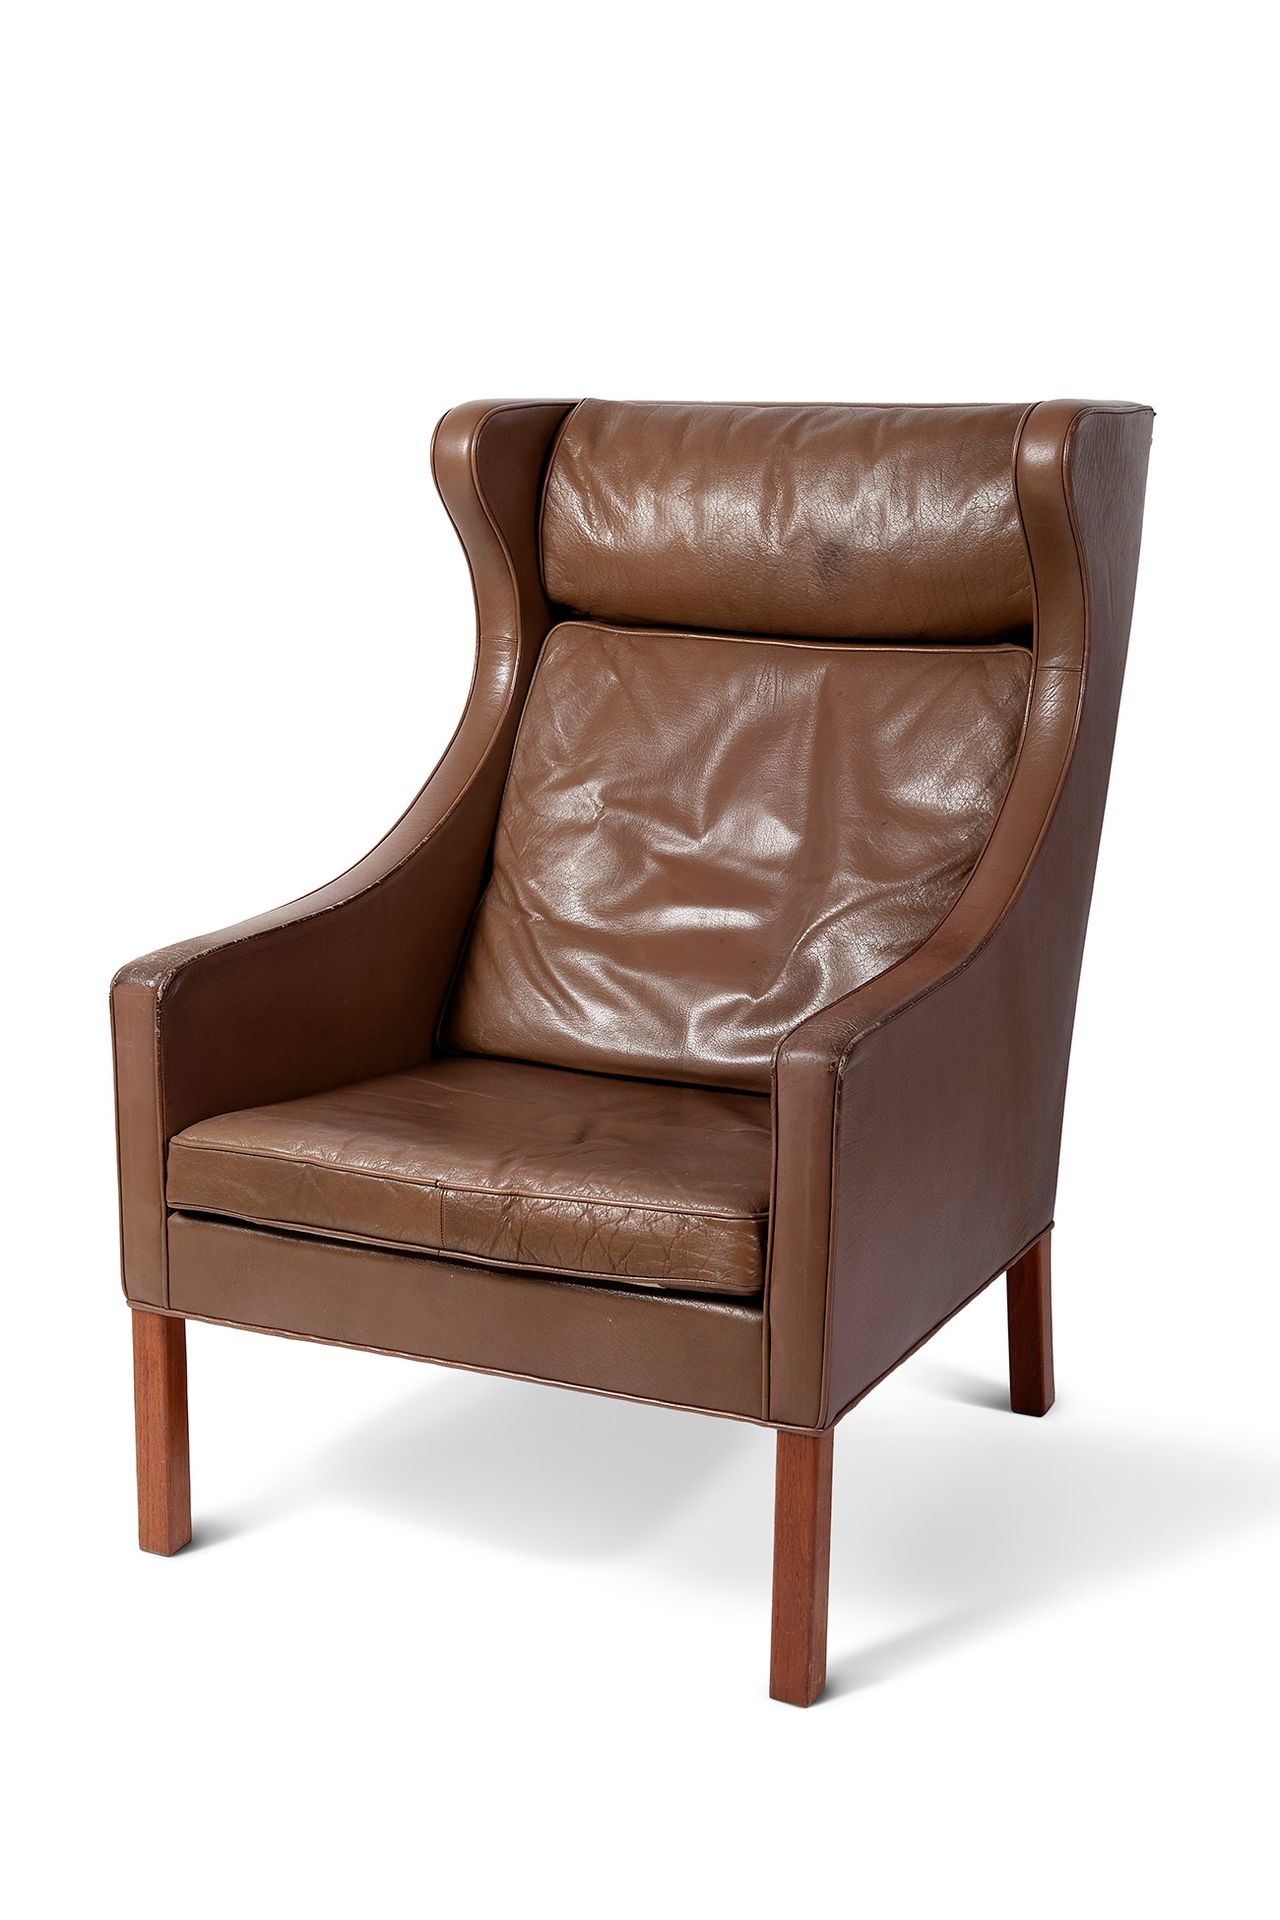 Danish design armchair, 60s-70s. Sillón de diseño danés, años 60-70.
Madera y ta&hellip;